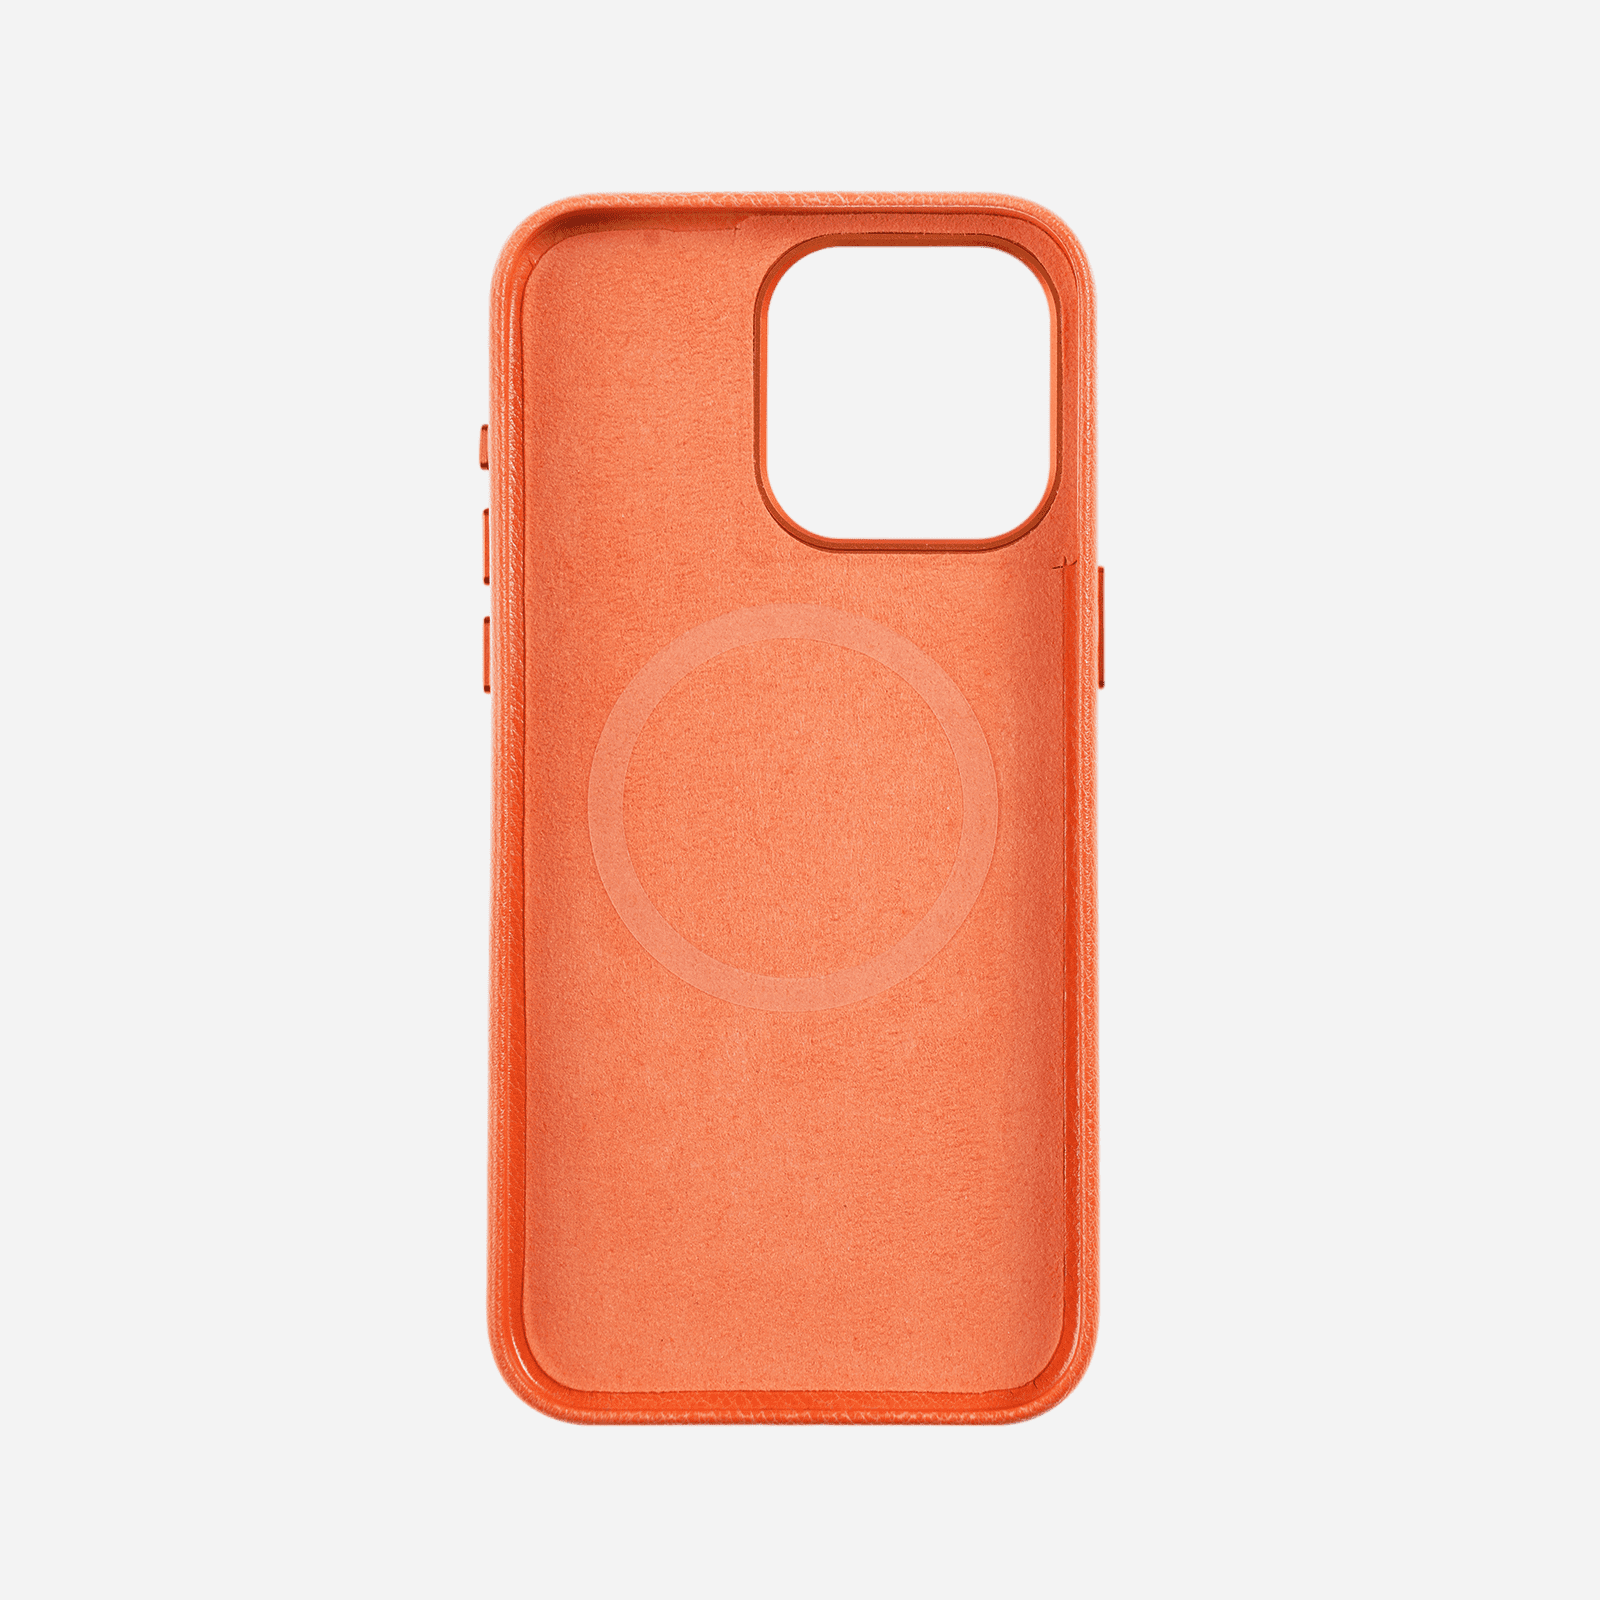 leathercase-Orange-3-1600